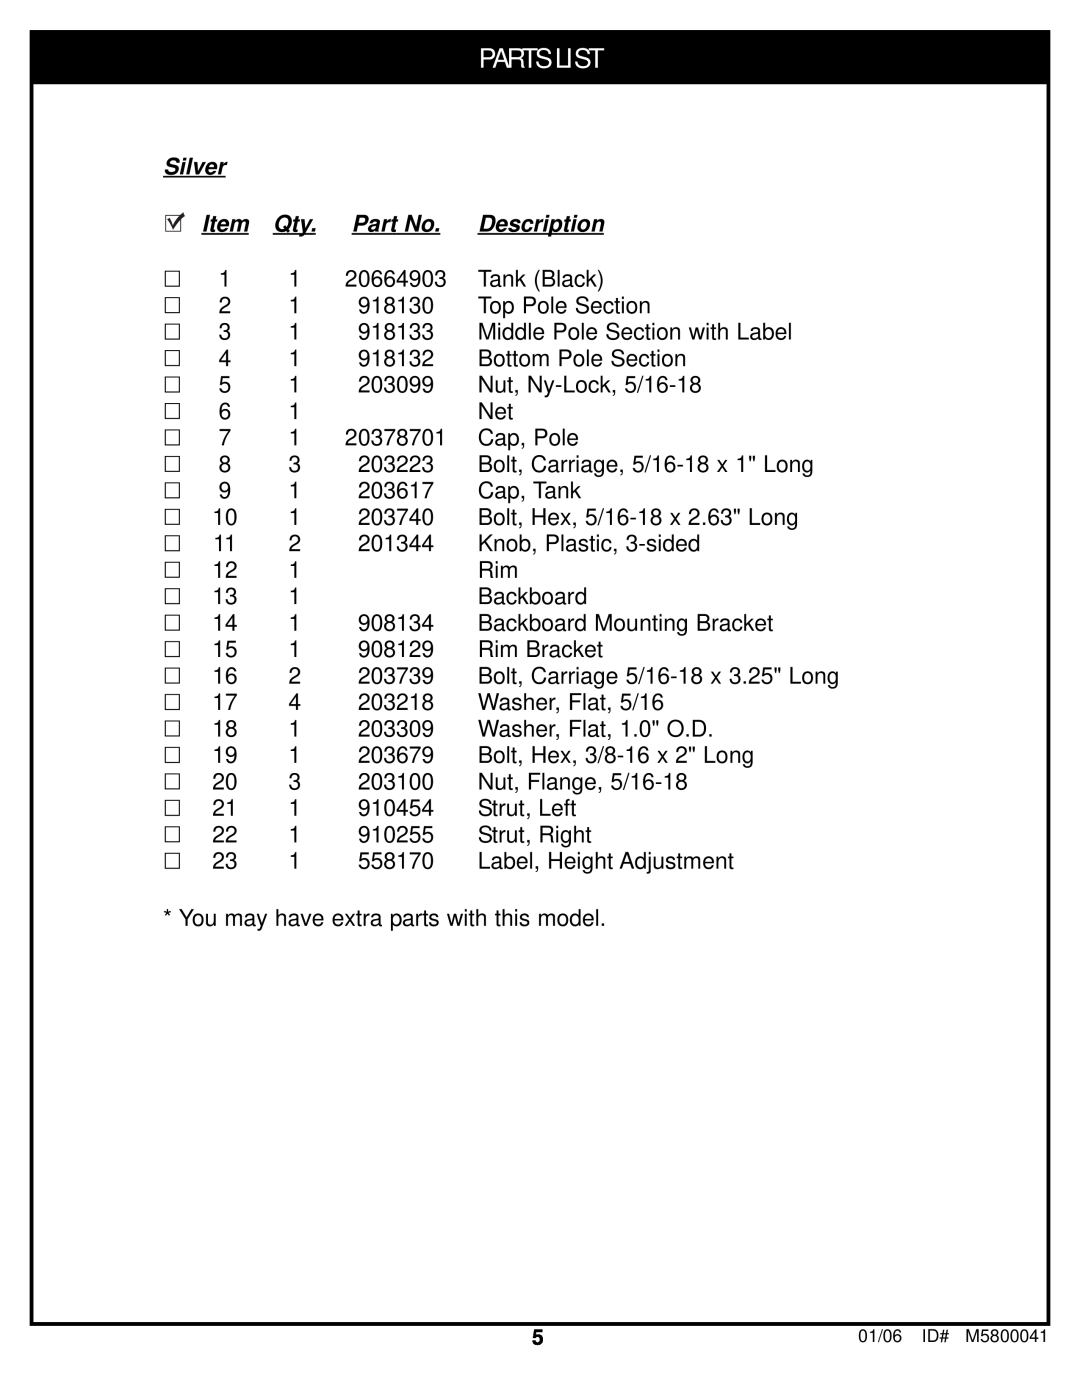 Spalding M5800041 manual Parts List, Silver, Description 